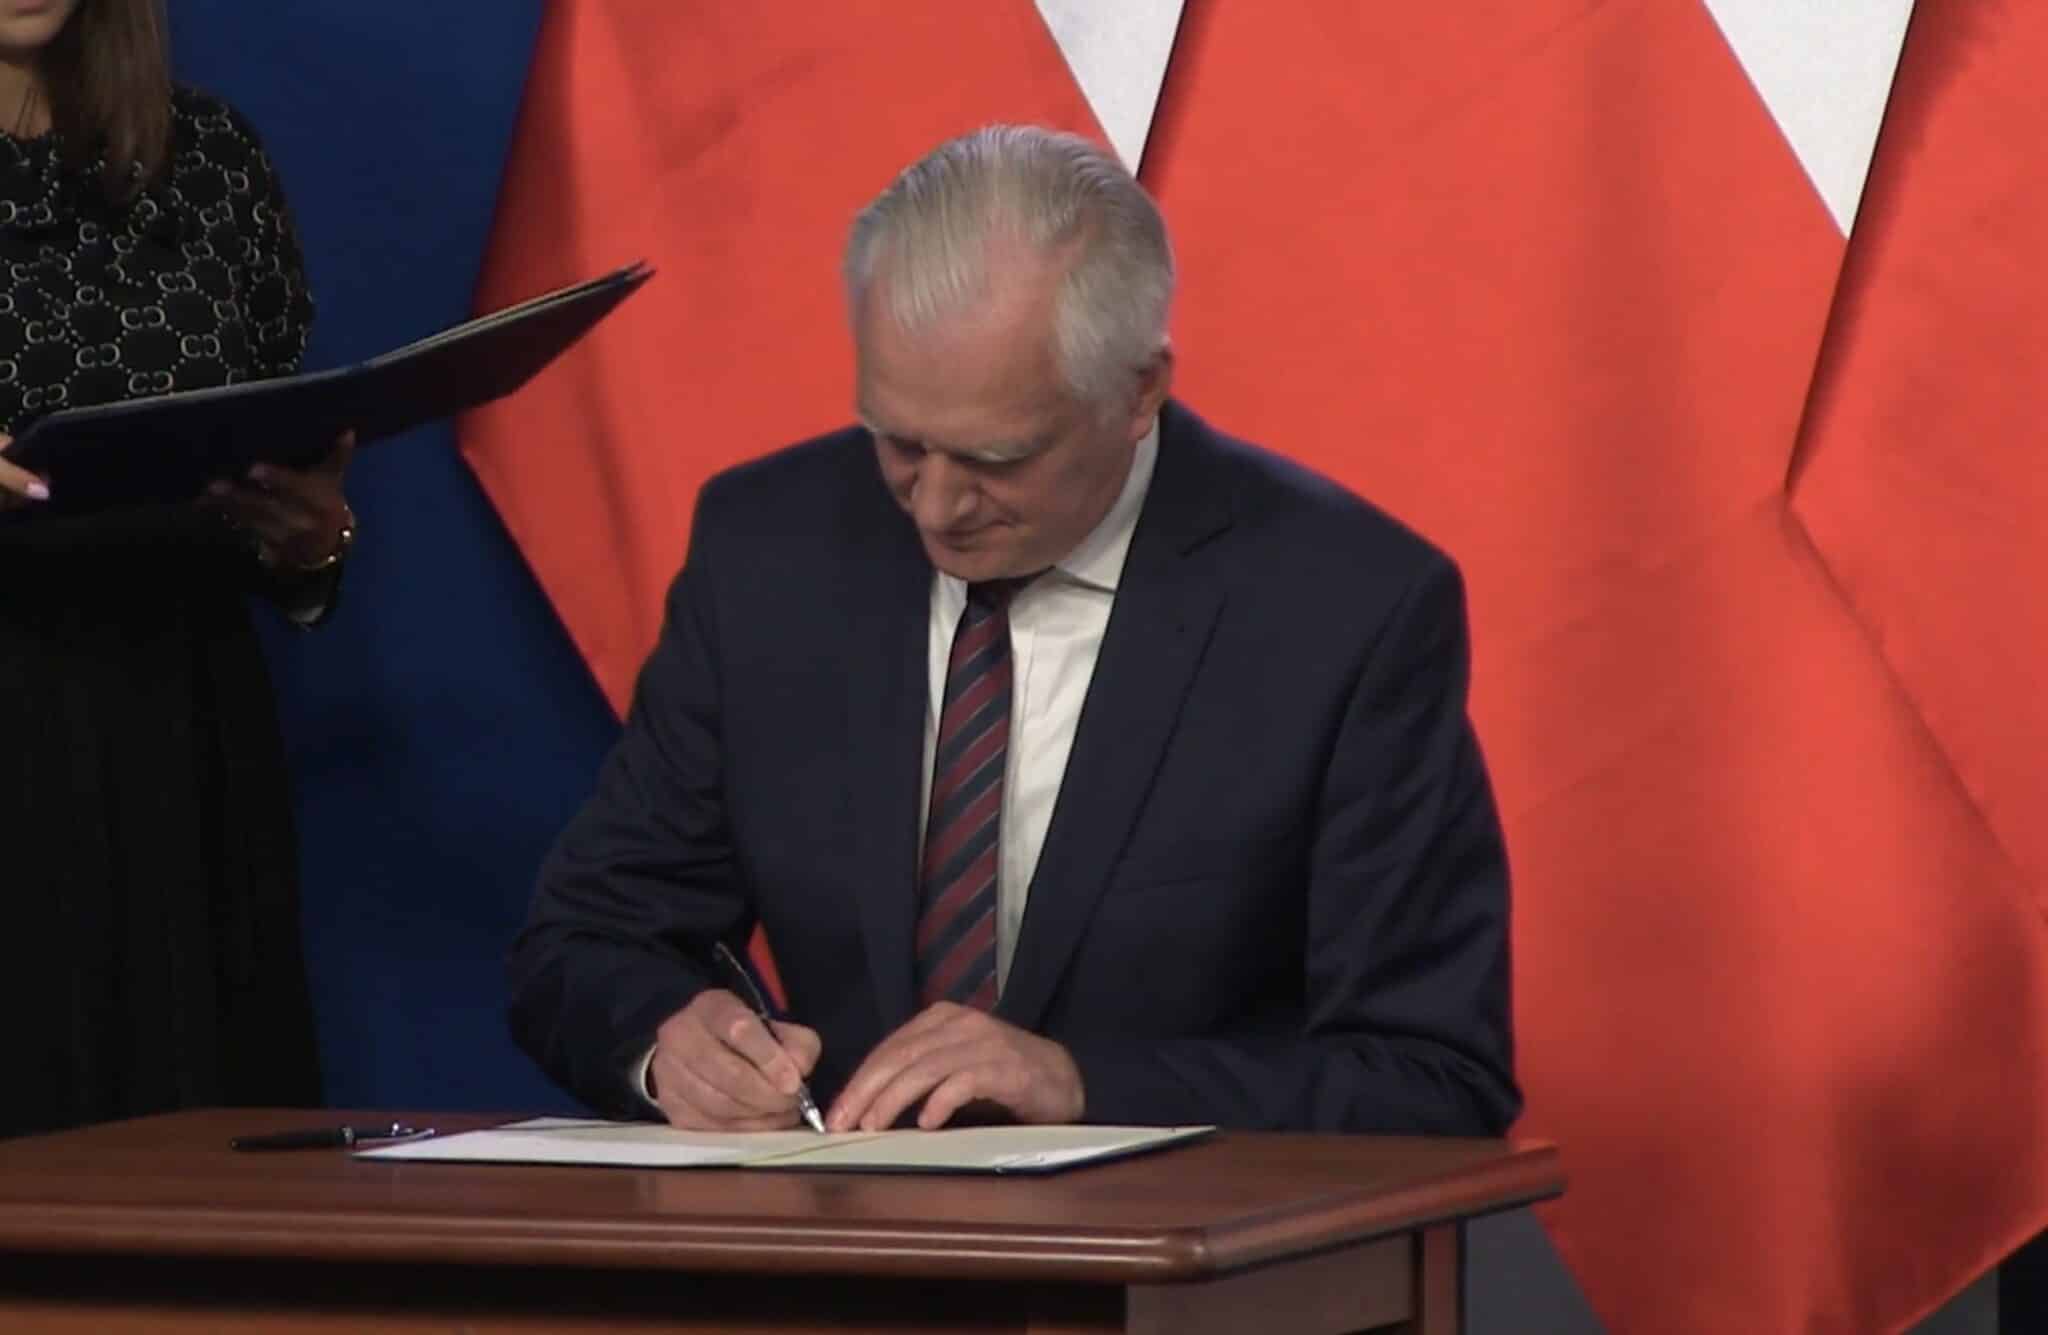 Liderzy: Jarosław Kaczyński, Jarosław Gowin i Zbigniew Ziobro podpisali porozumienie koalicyjne